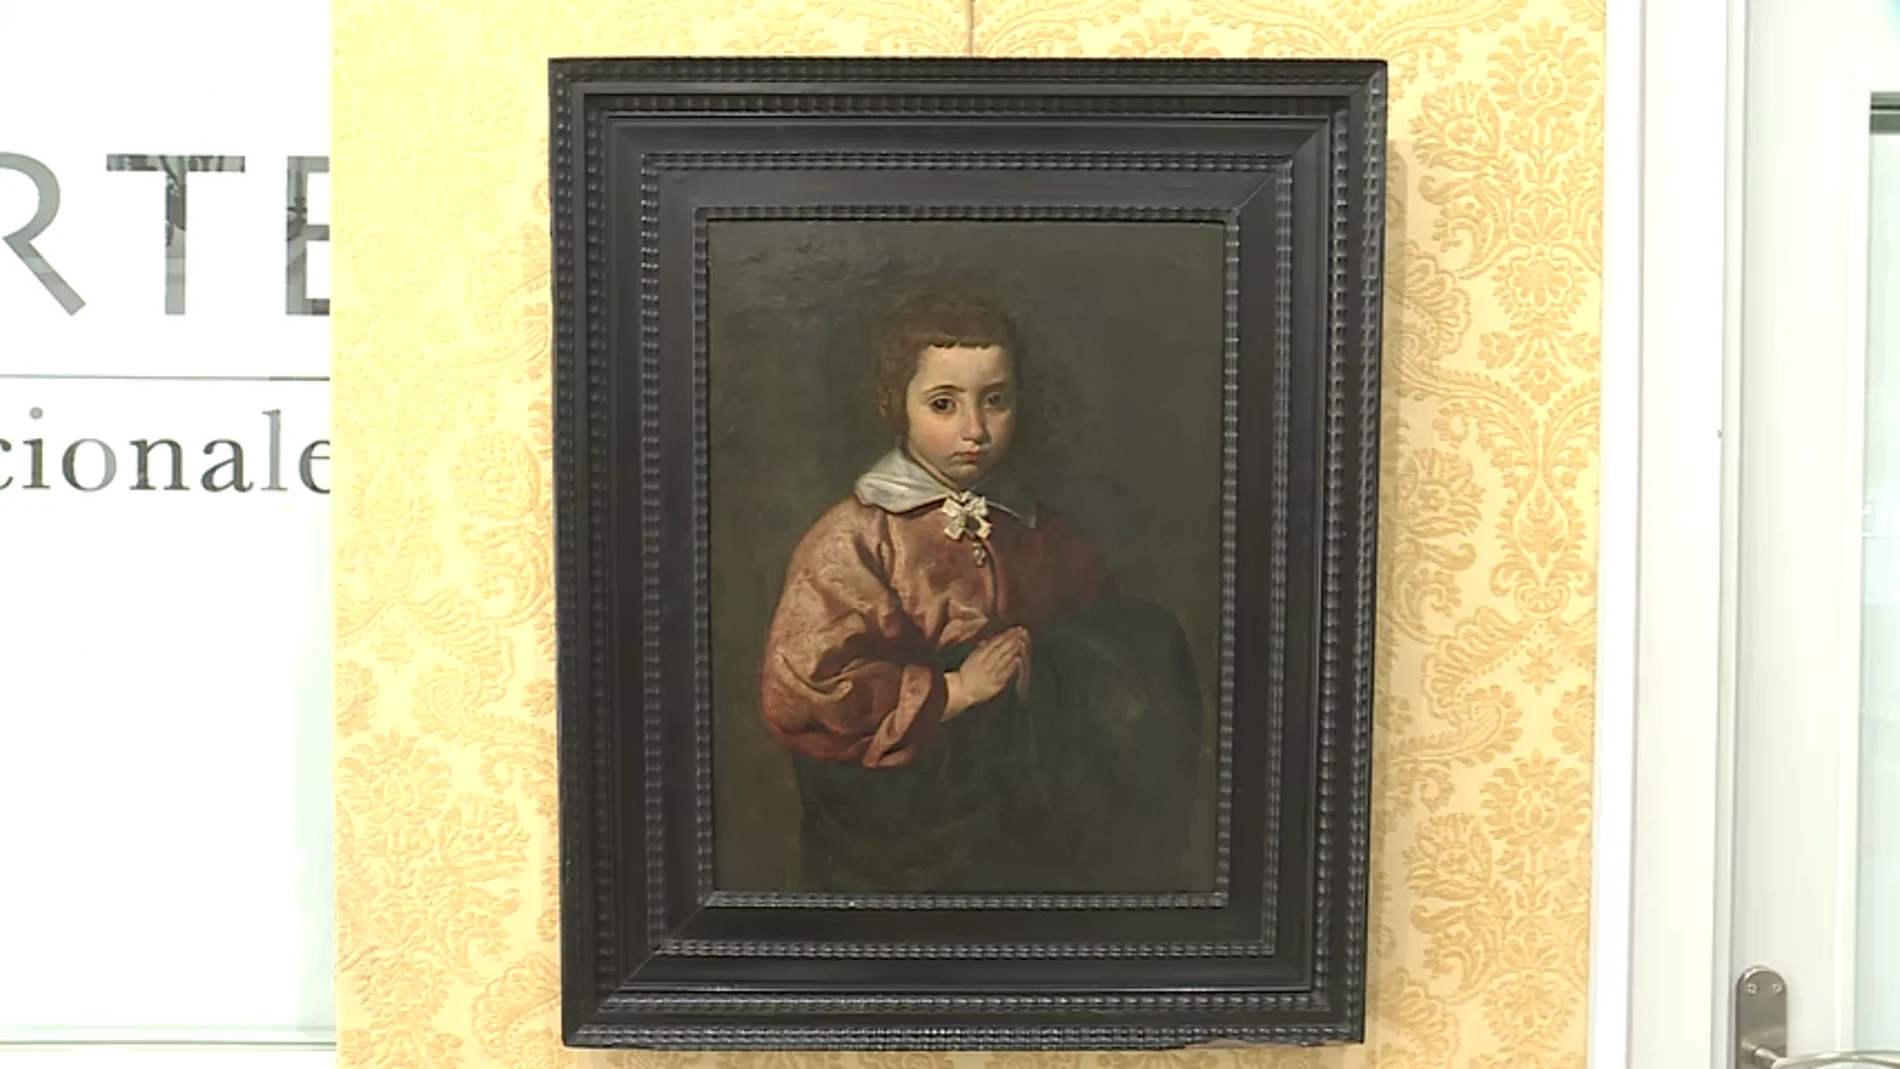 Frame 58.887884 de: Un comprador anónimo paga ocho millones de euros por un cuadro inédito que atribuyen a Velázquez